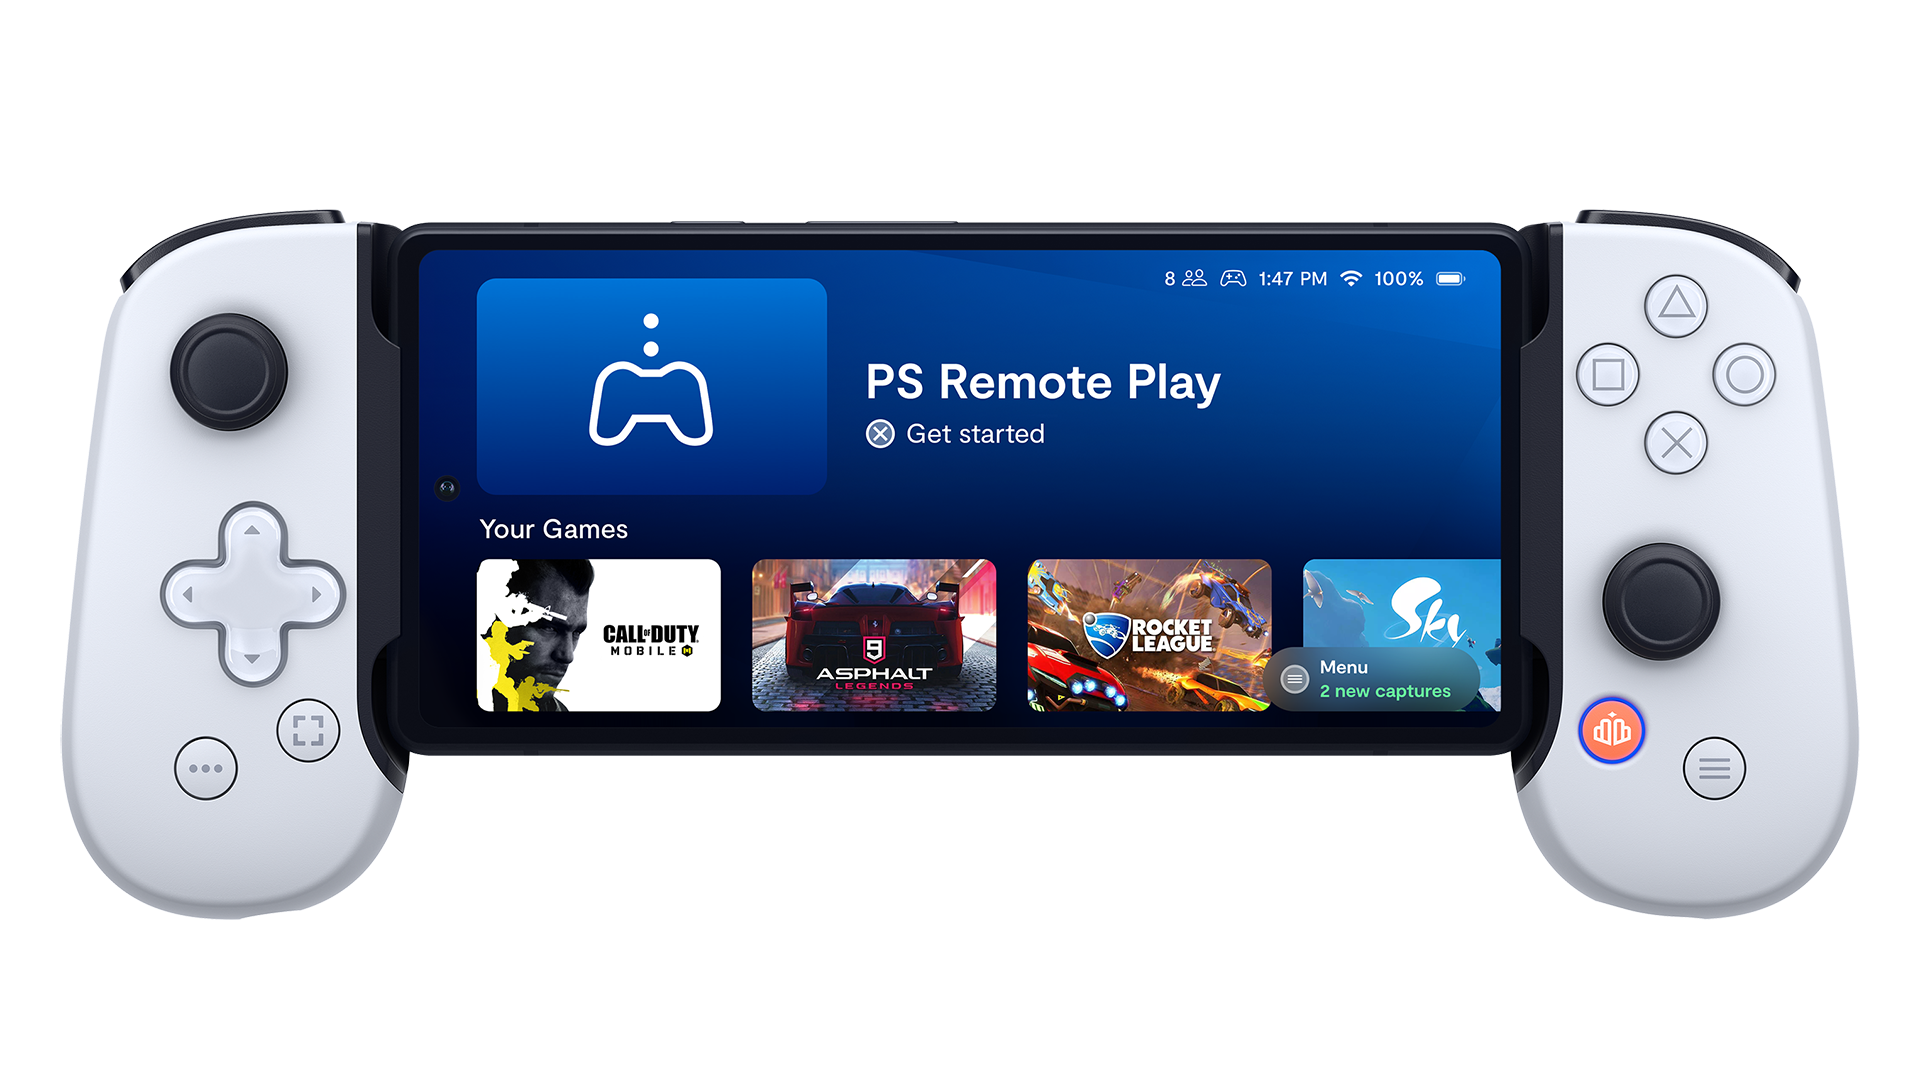 PlayStation FAQ – Roblox Support